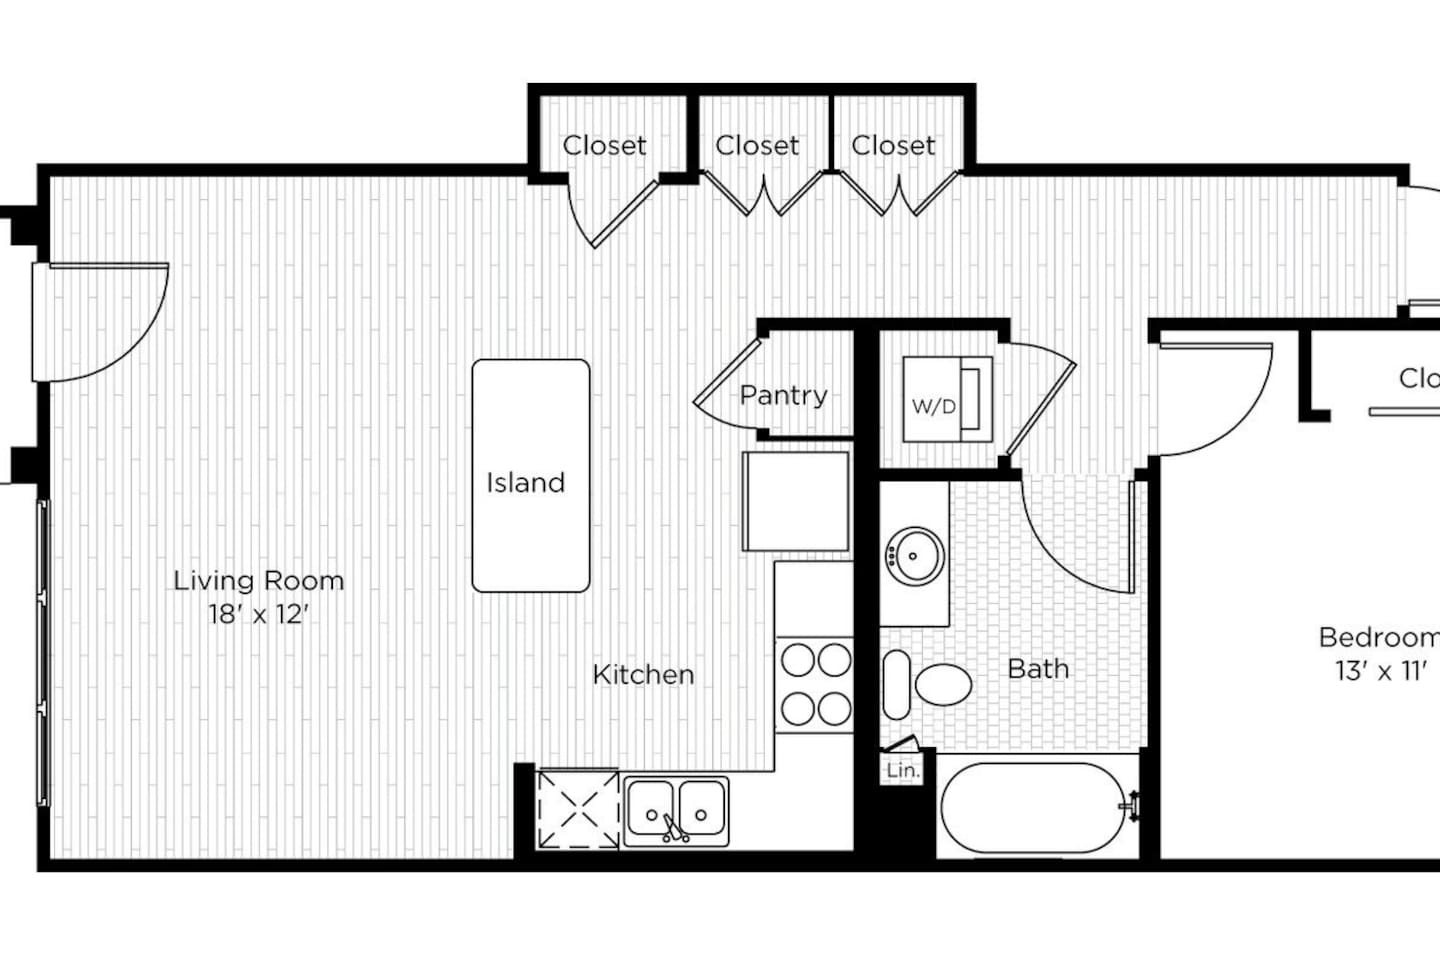 Floorplan diagram for 1AS, showing 1 bedroom